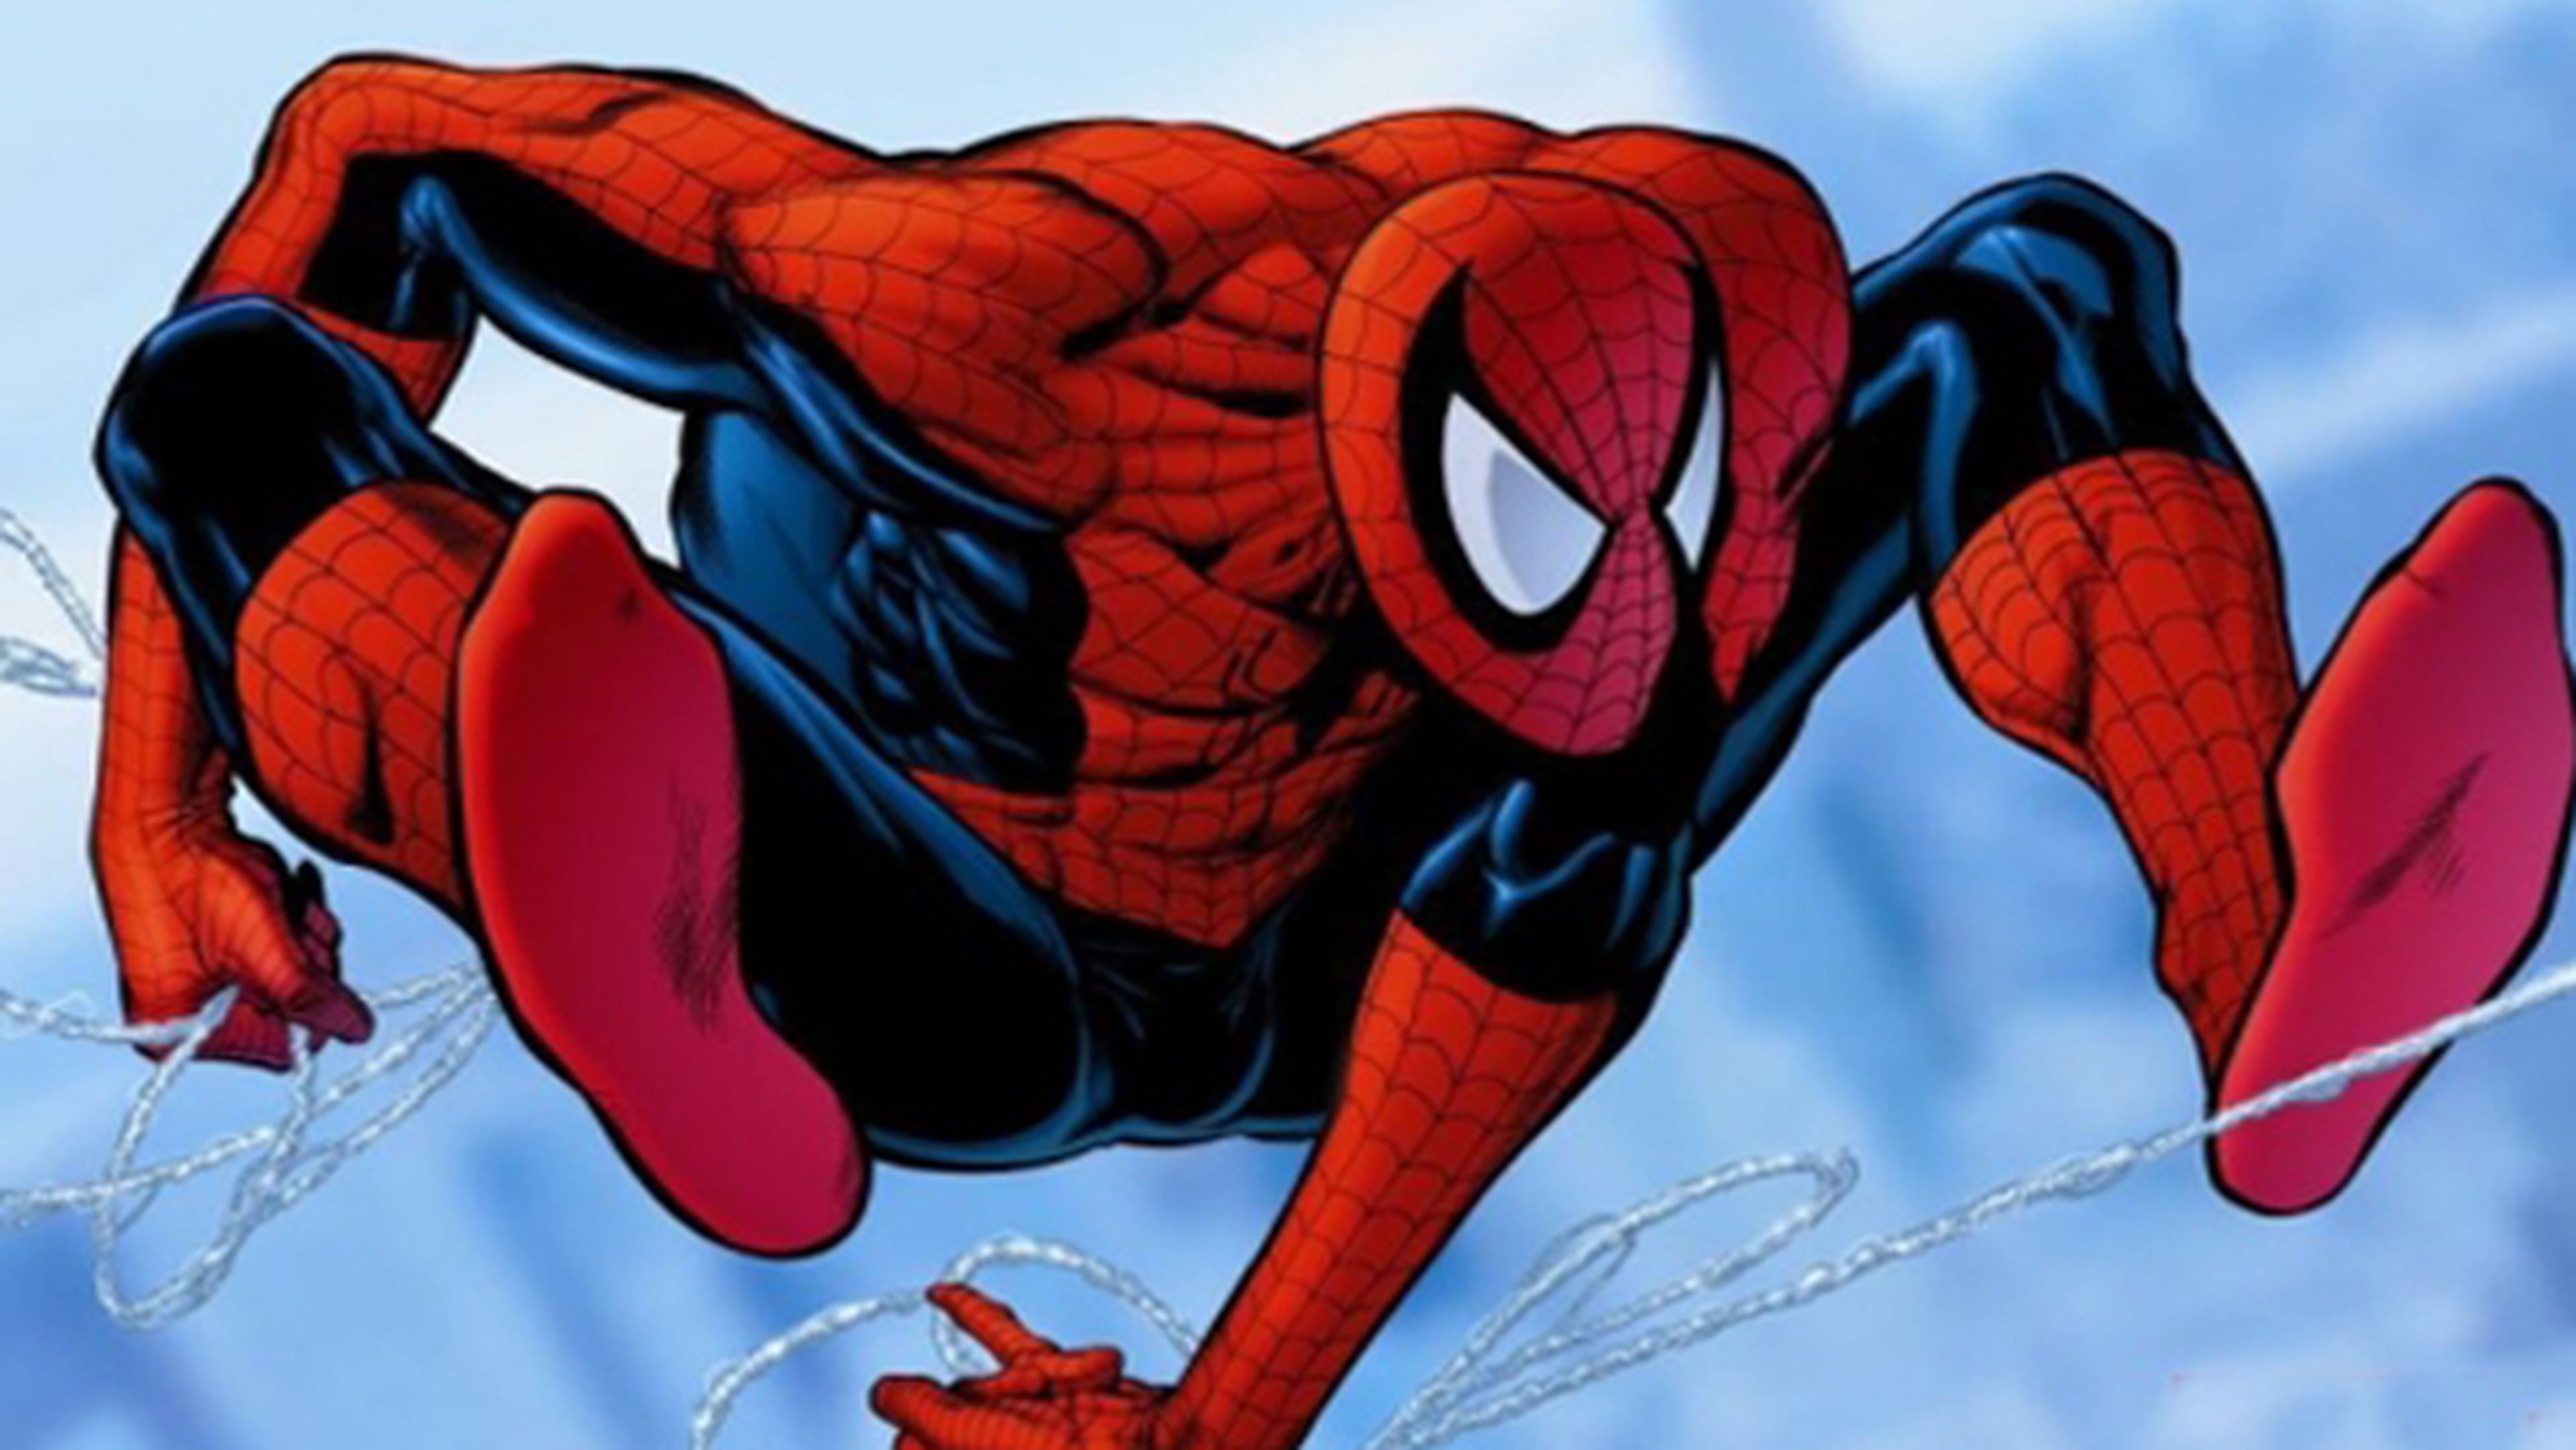 Spider-Man rompe récords en una subasta